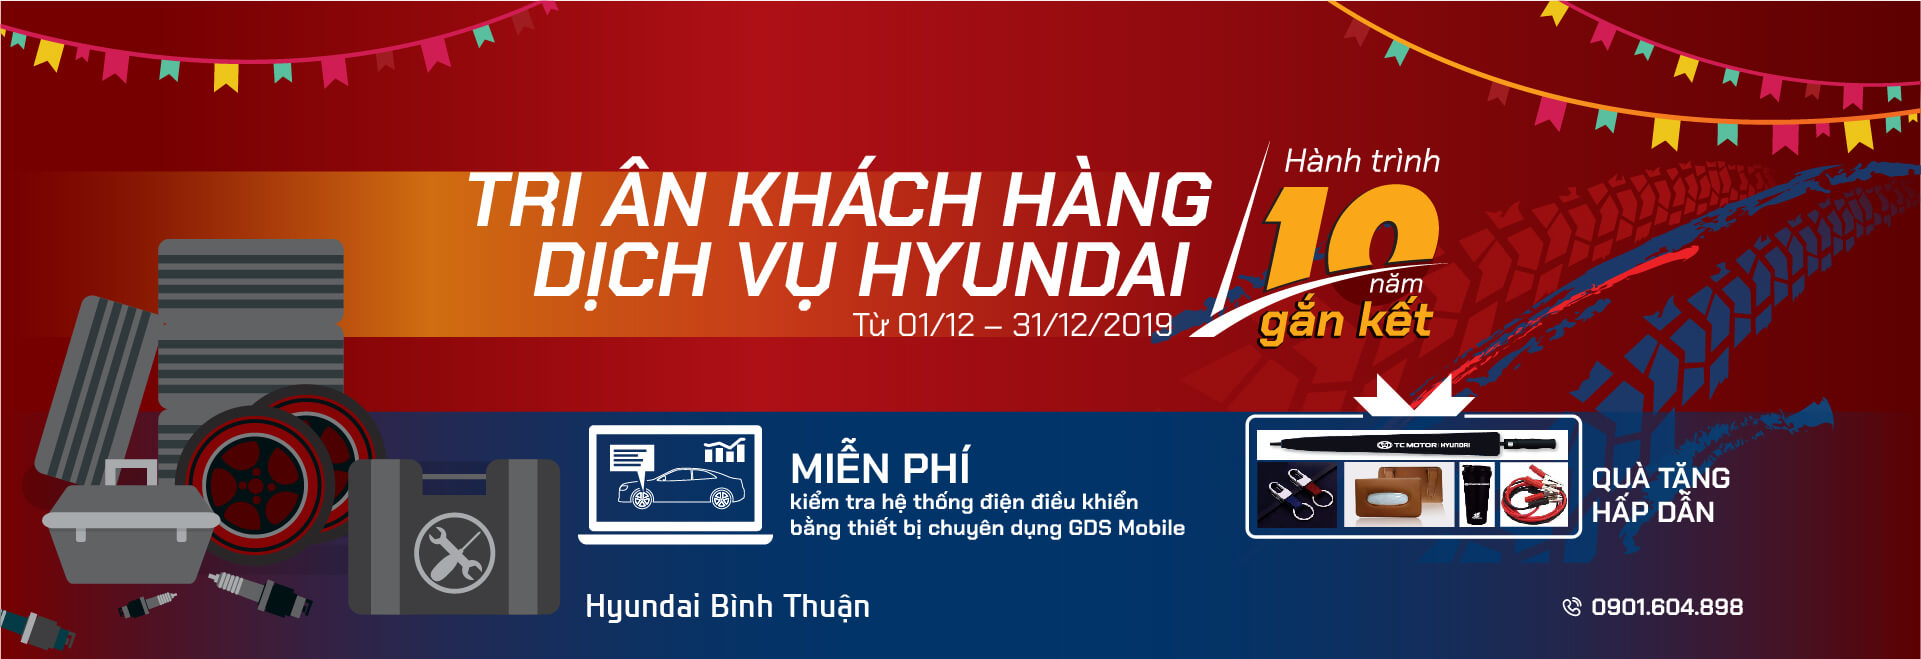 Hyundai Bình Thuận khuyến mãi dịch vụ cuối năm